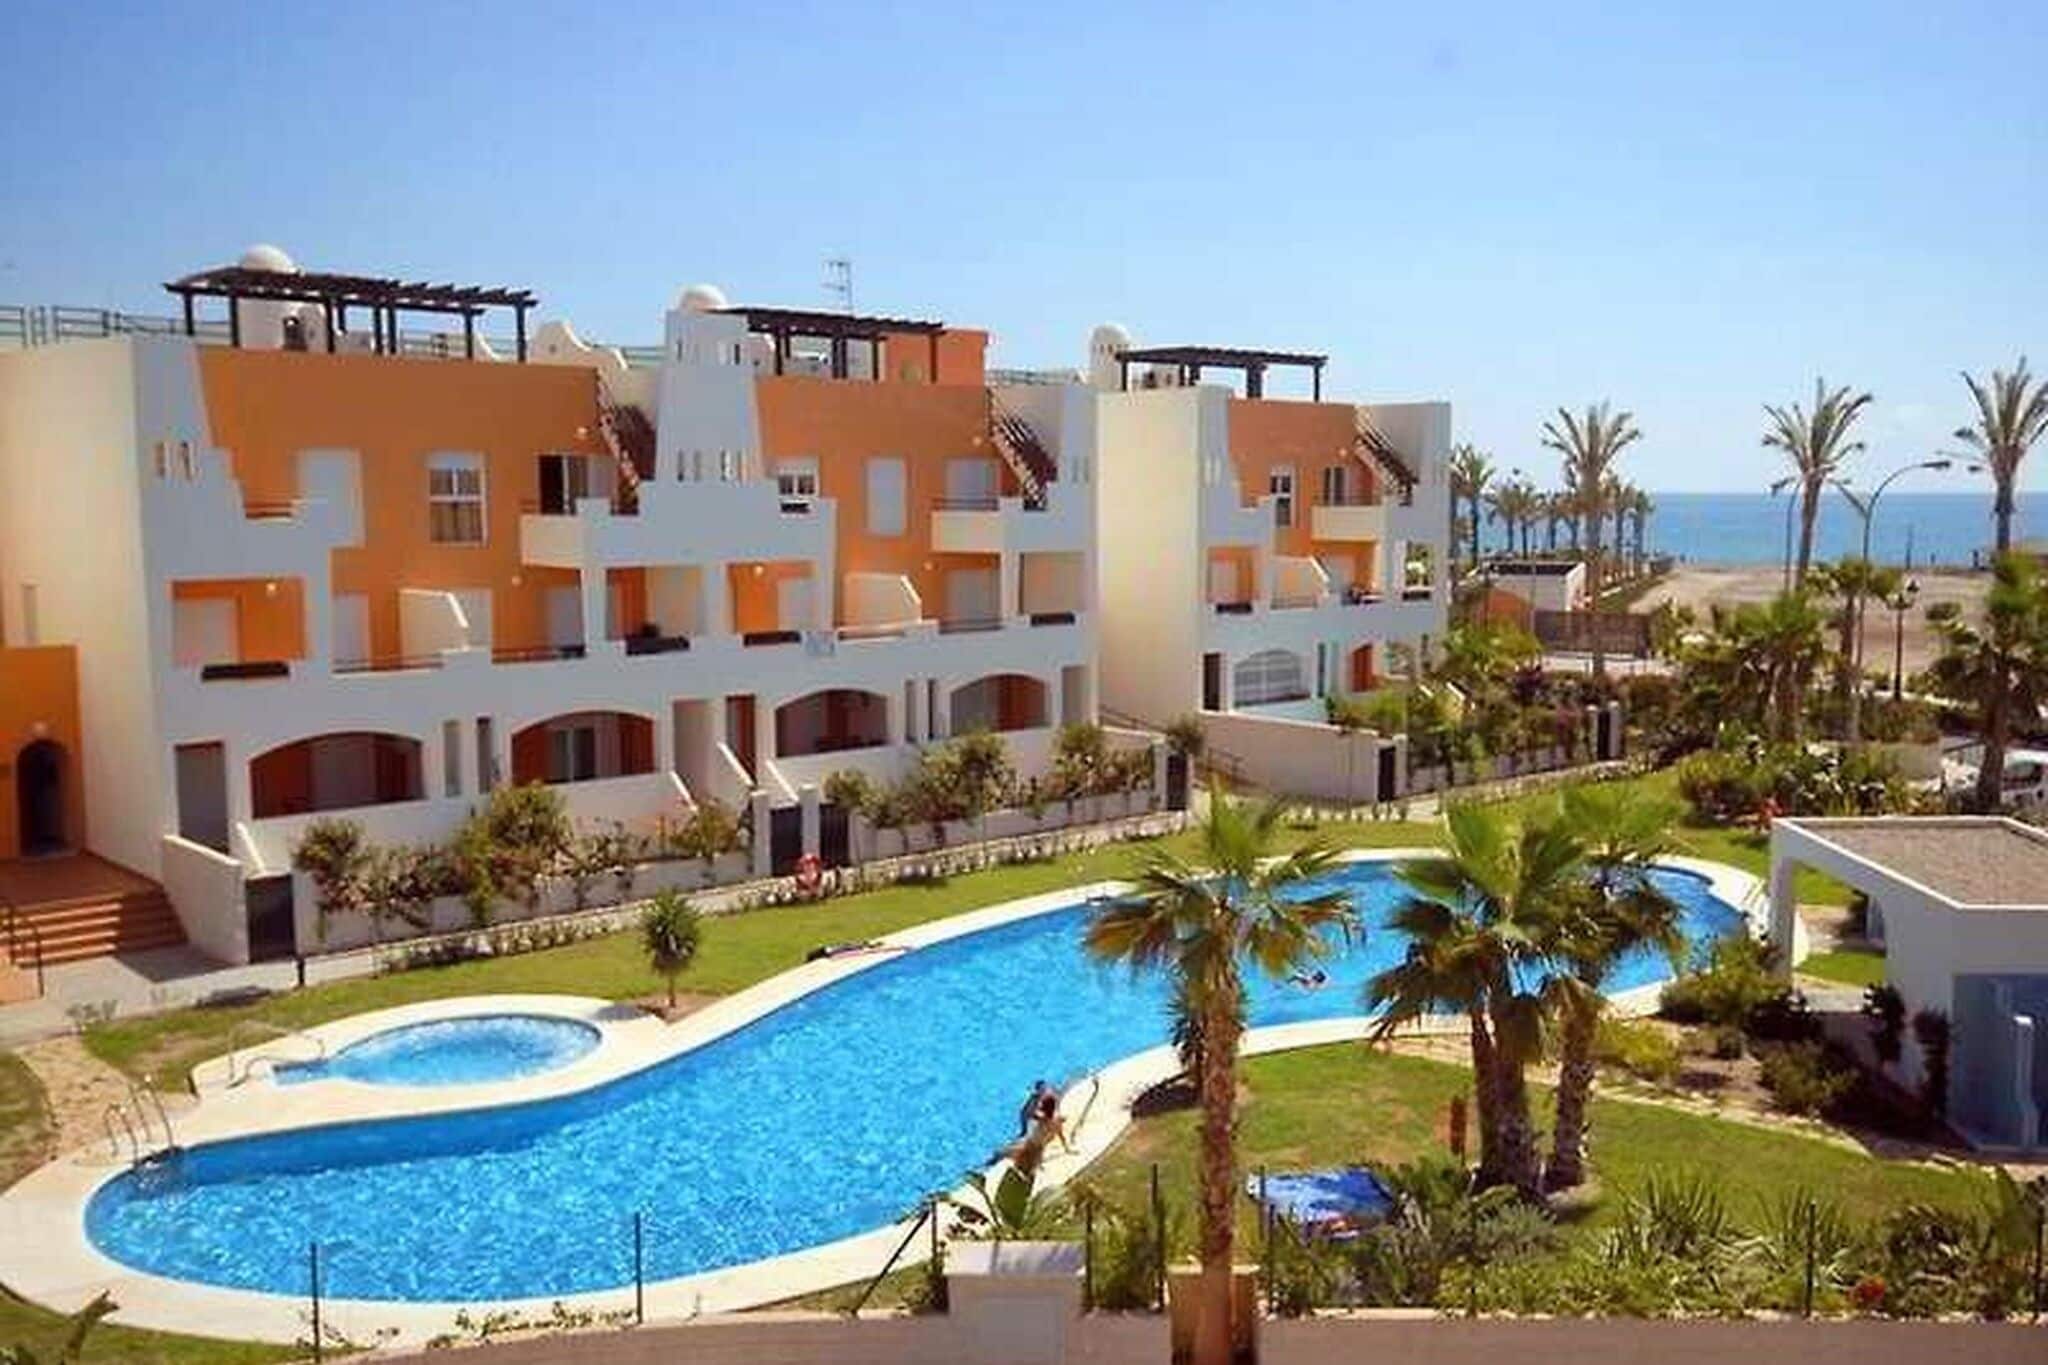 Pleasant apartment in Vera Playa near the beach